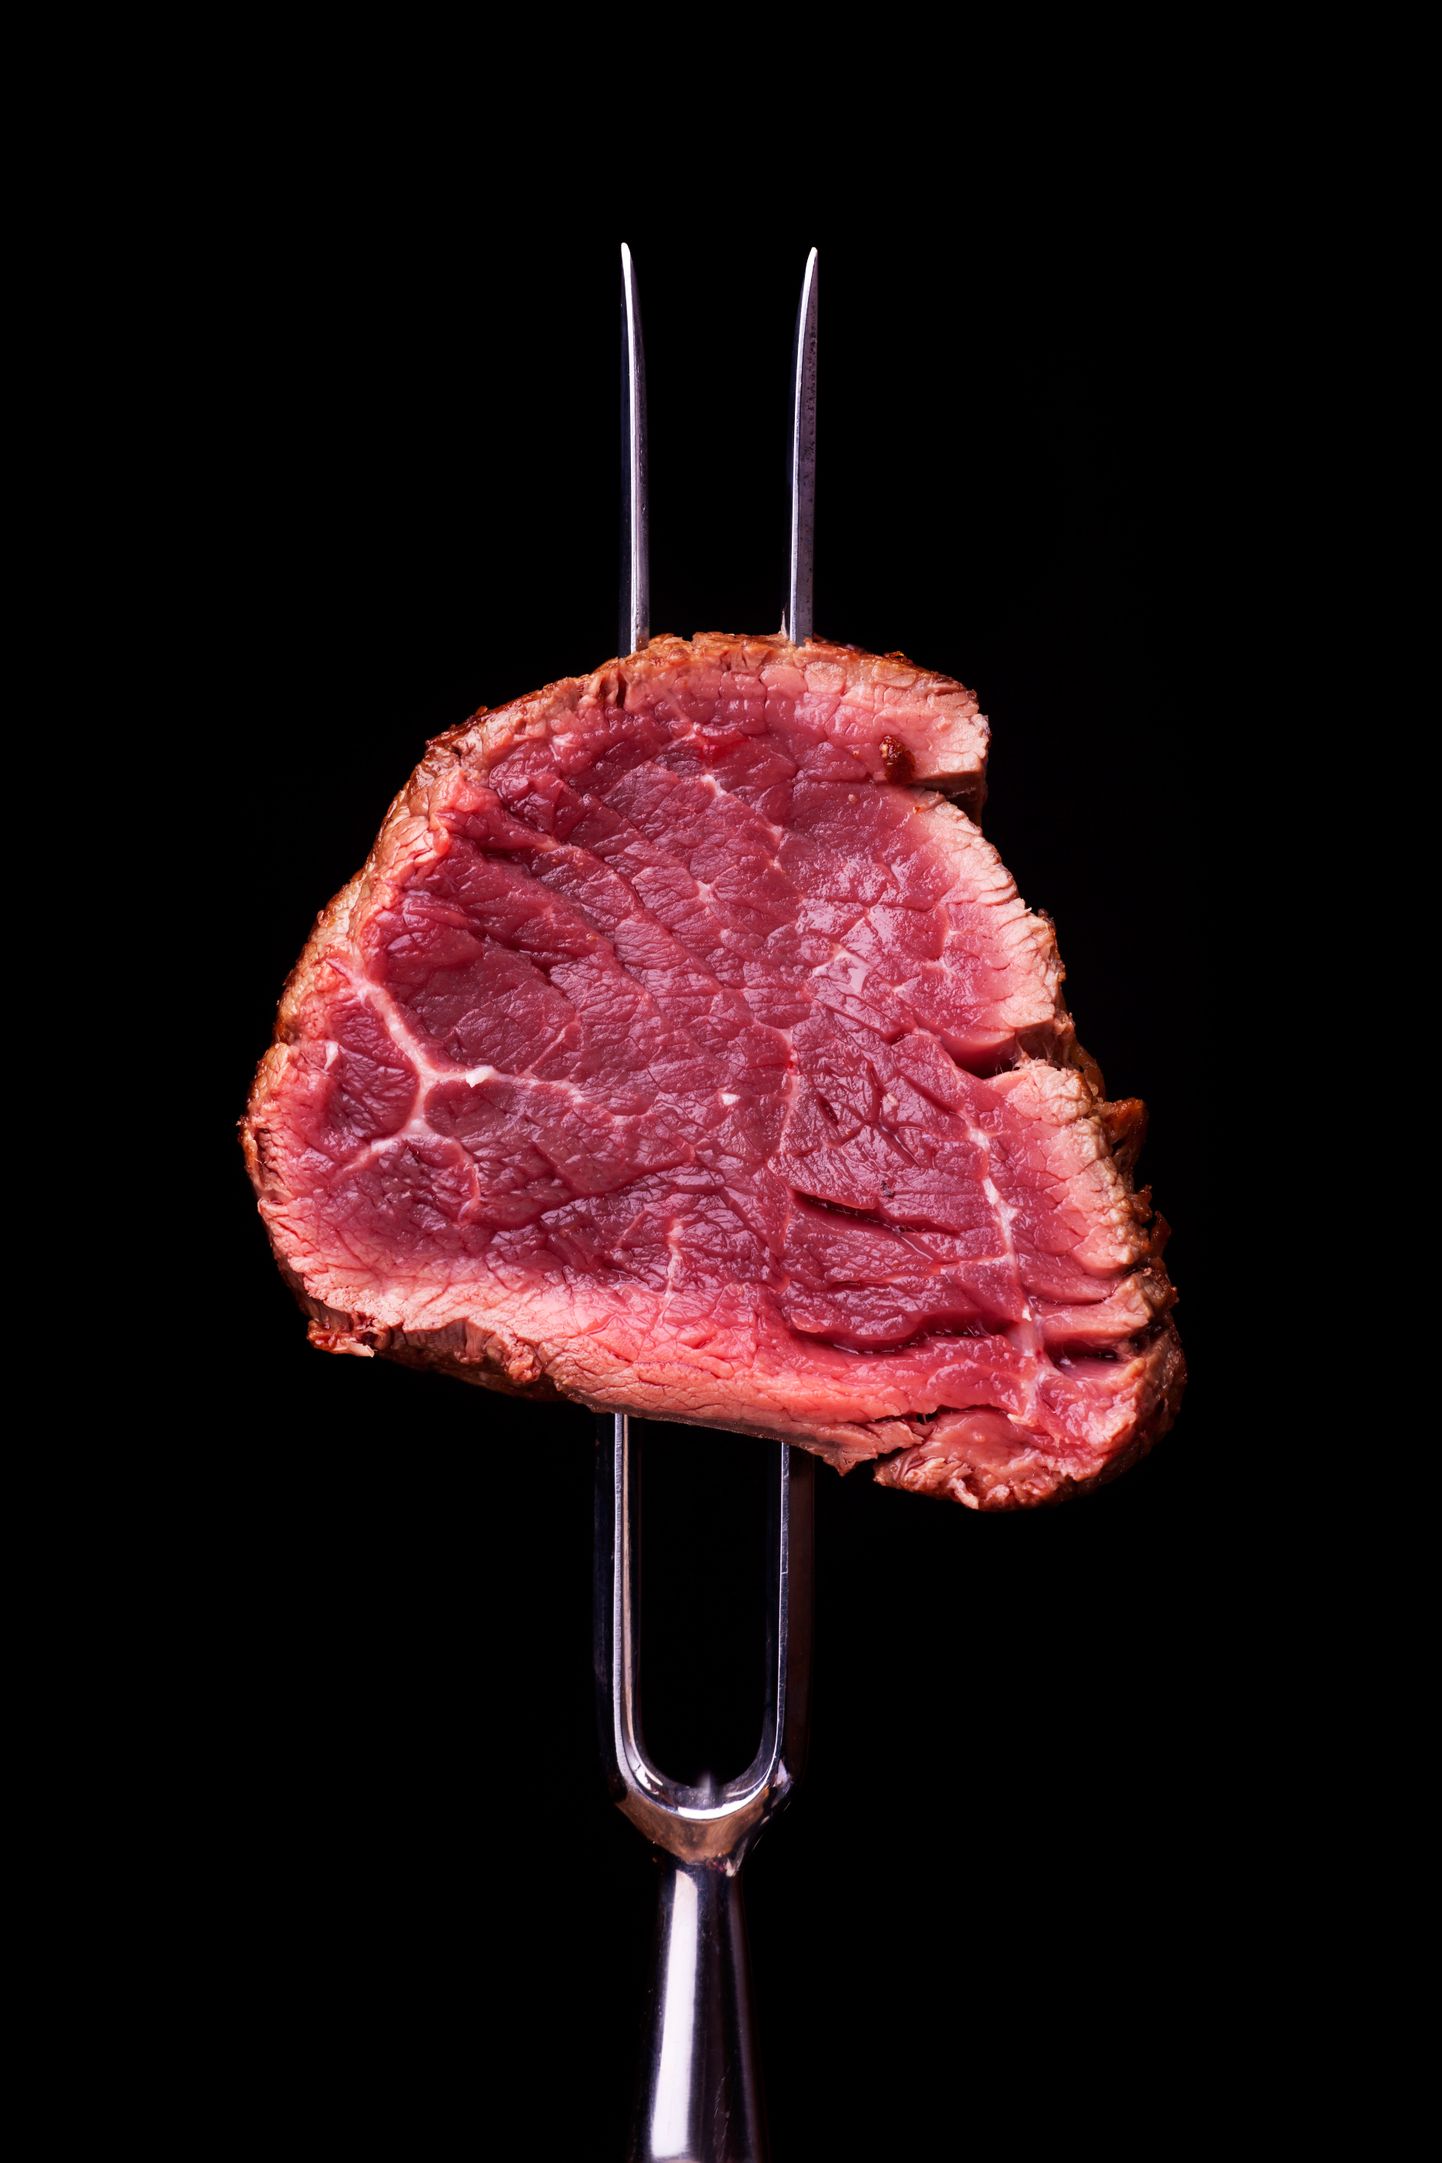 Uuring leidis, et tervisele ohtliku kemikaali tase tõuseb kolmekordseks vaid peale kuud aega punase liha söömist.